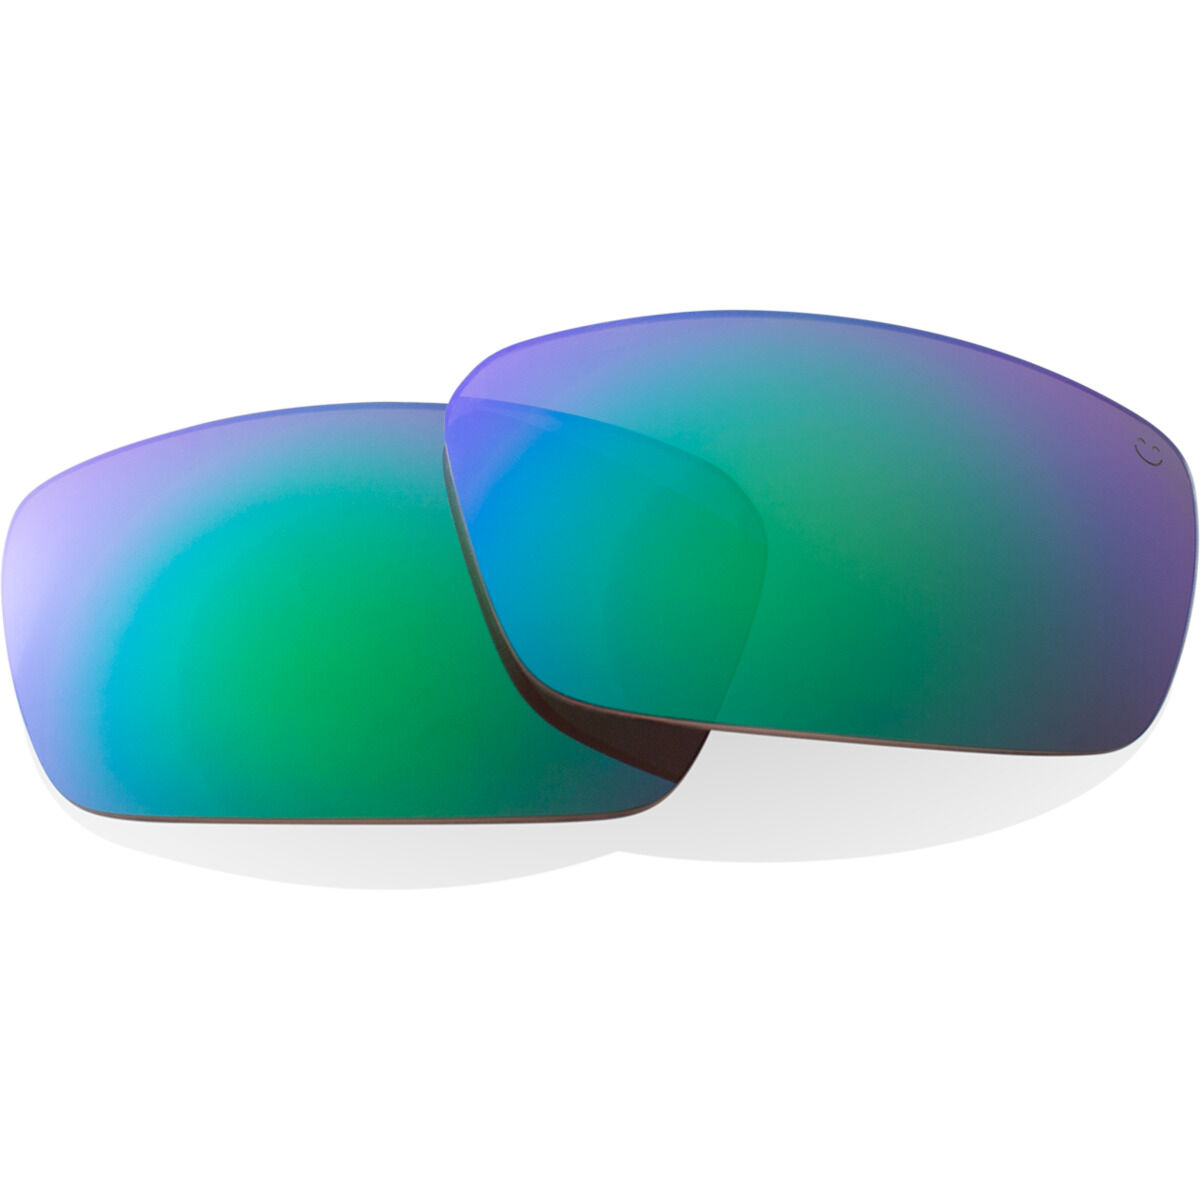 Gatorz sunglass replacement lenses by Sunglass Fix™